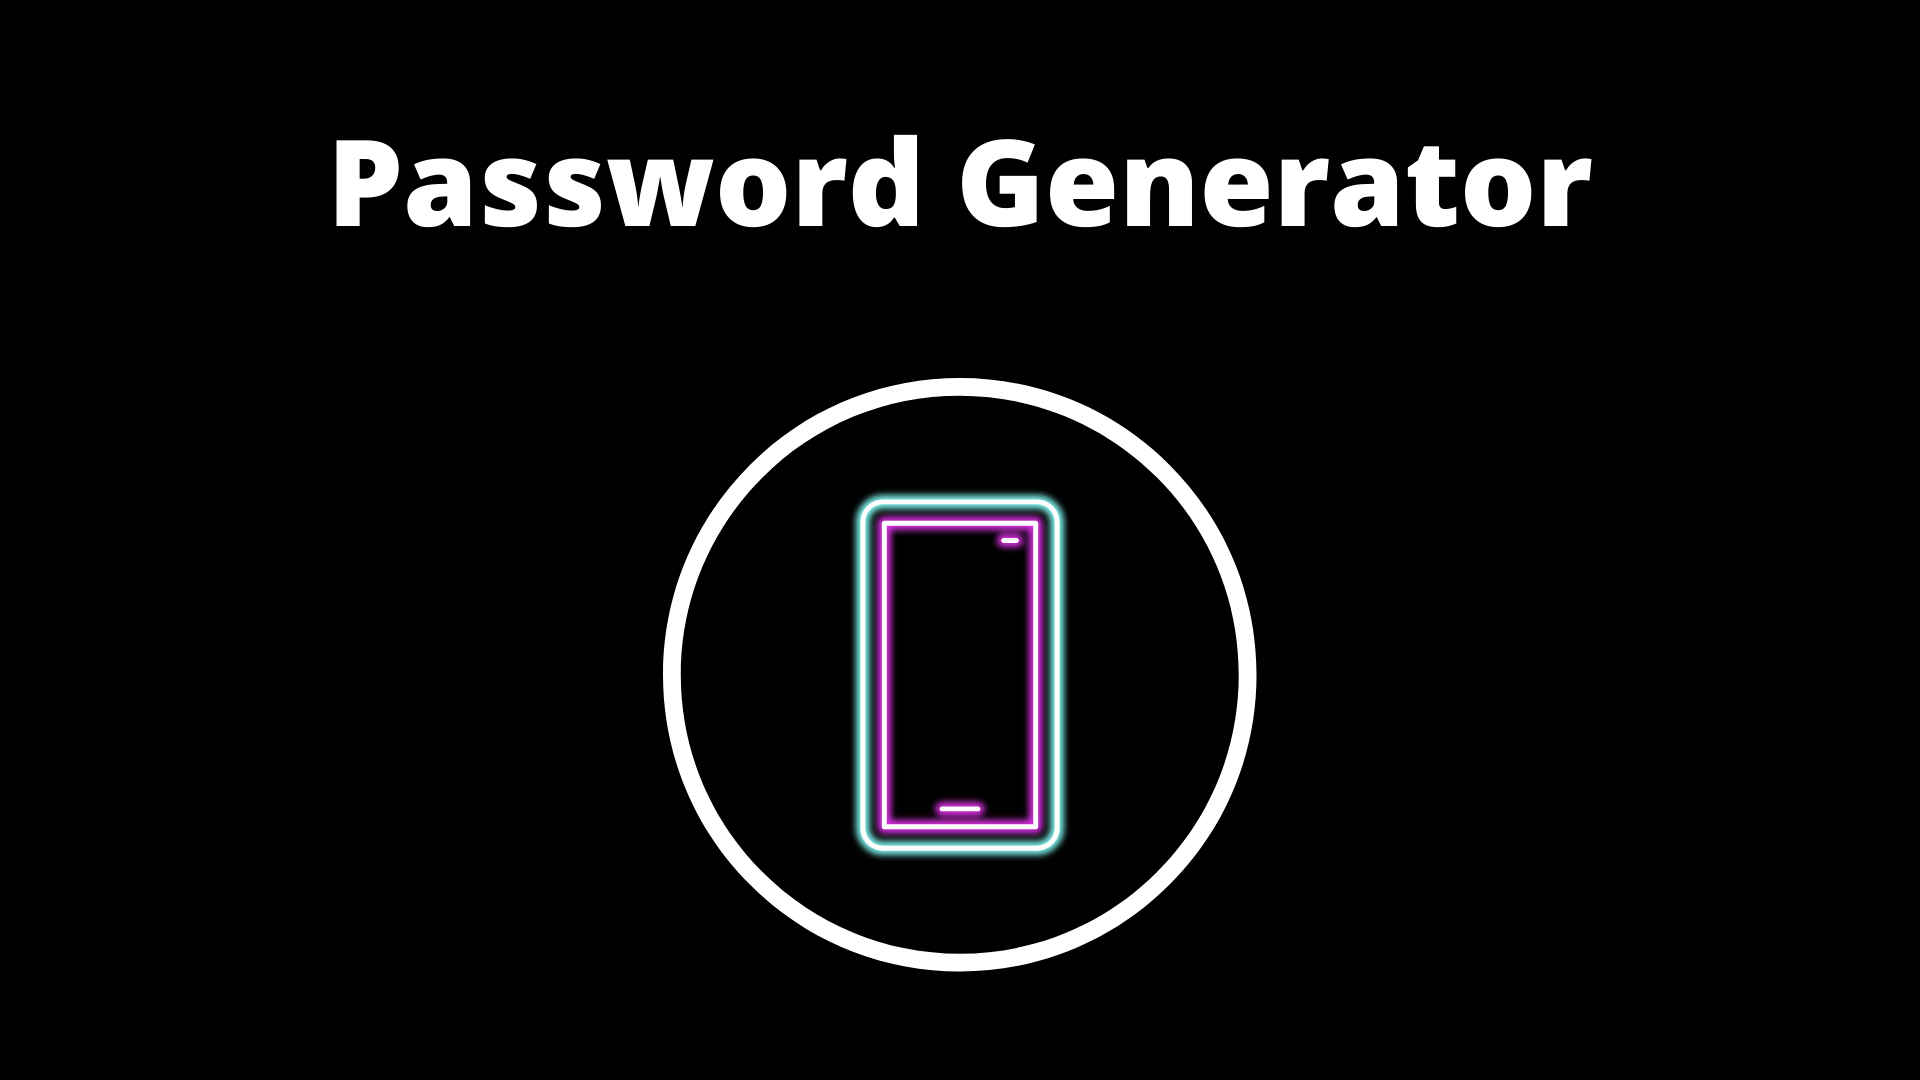 instal the last version for ios PasswordGenerator 23.6.13